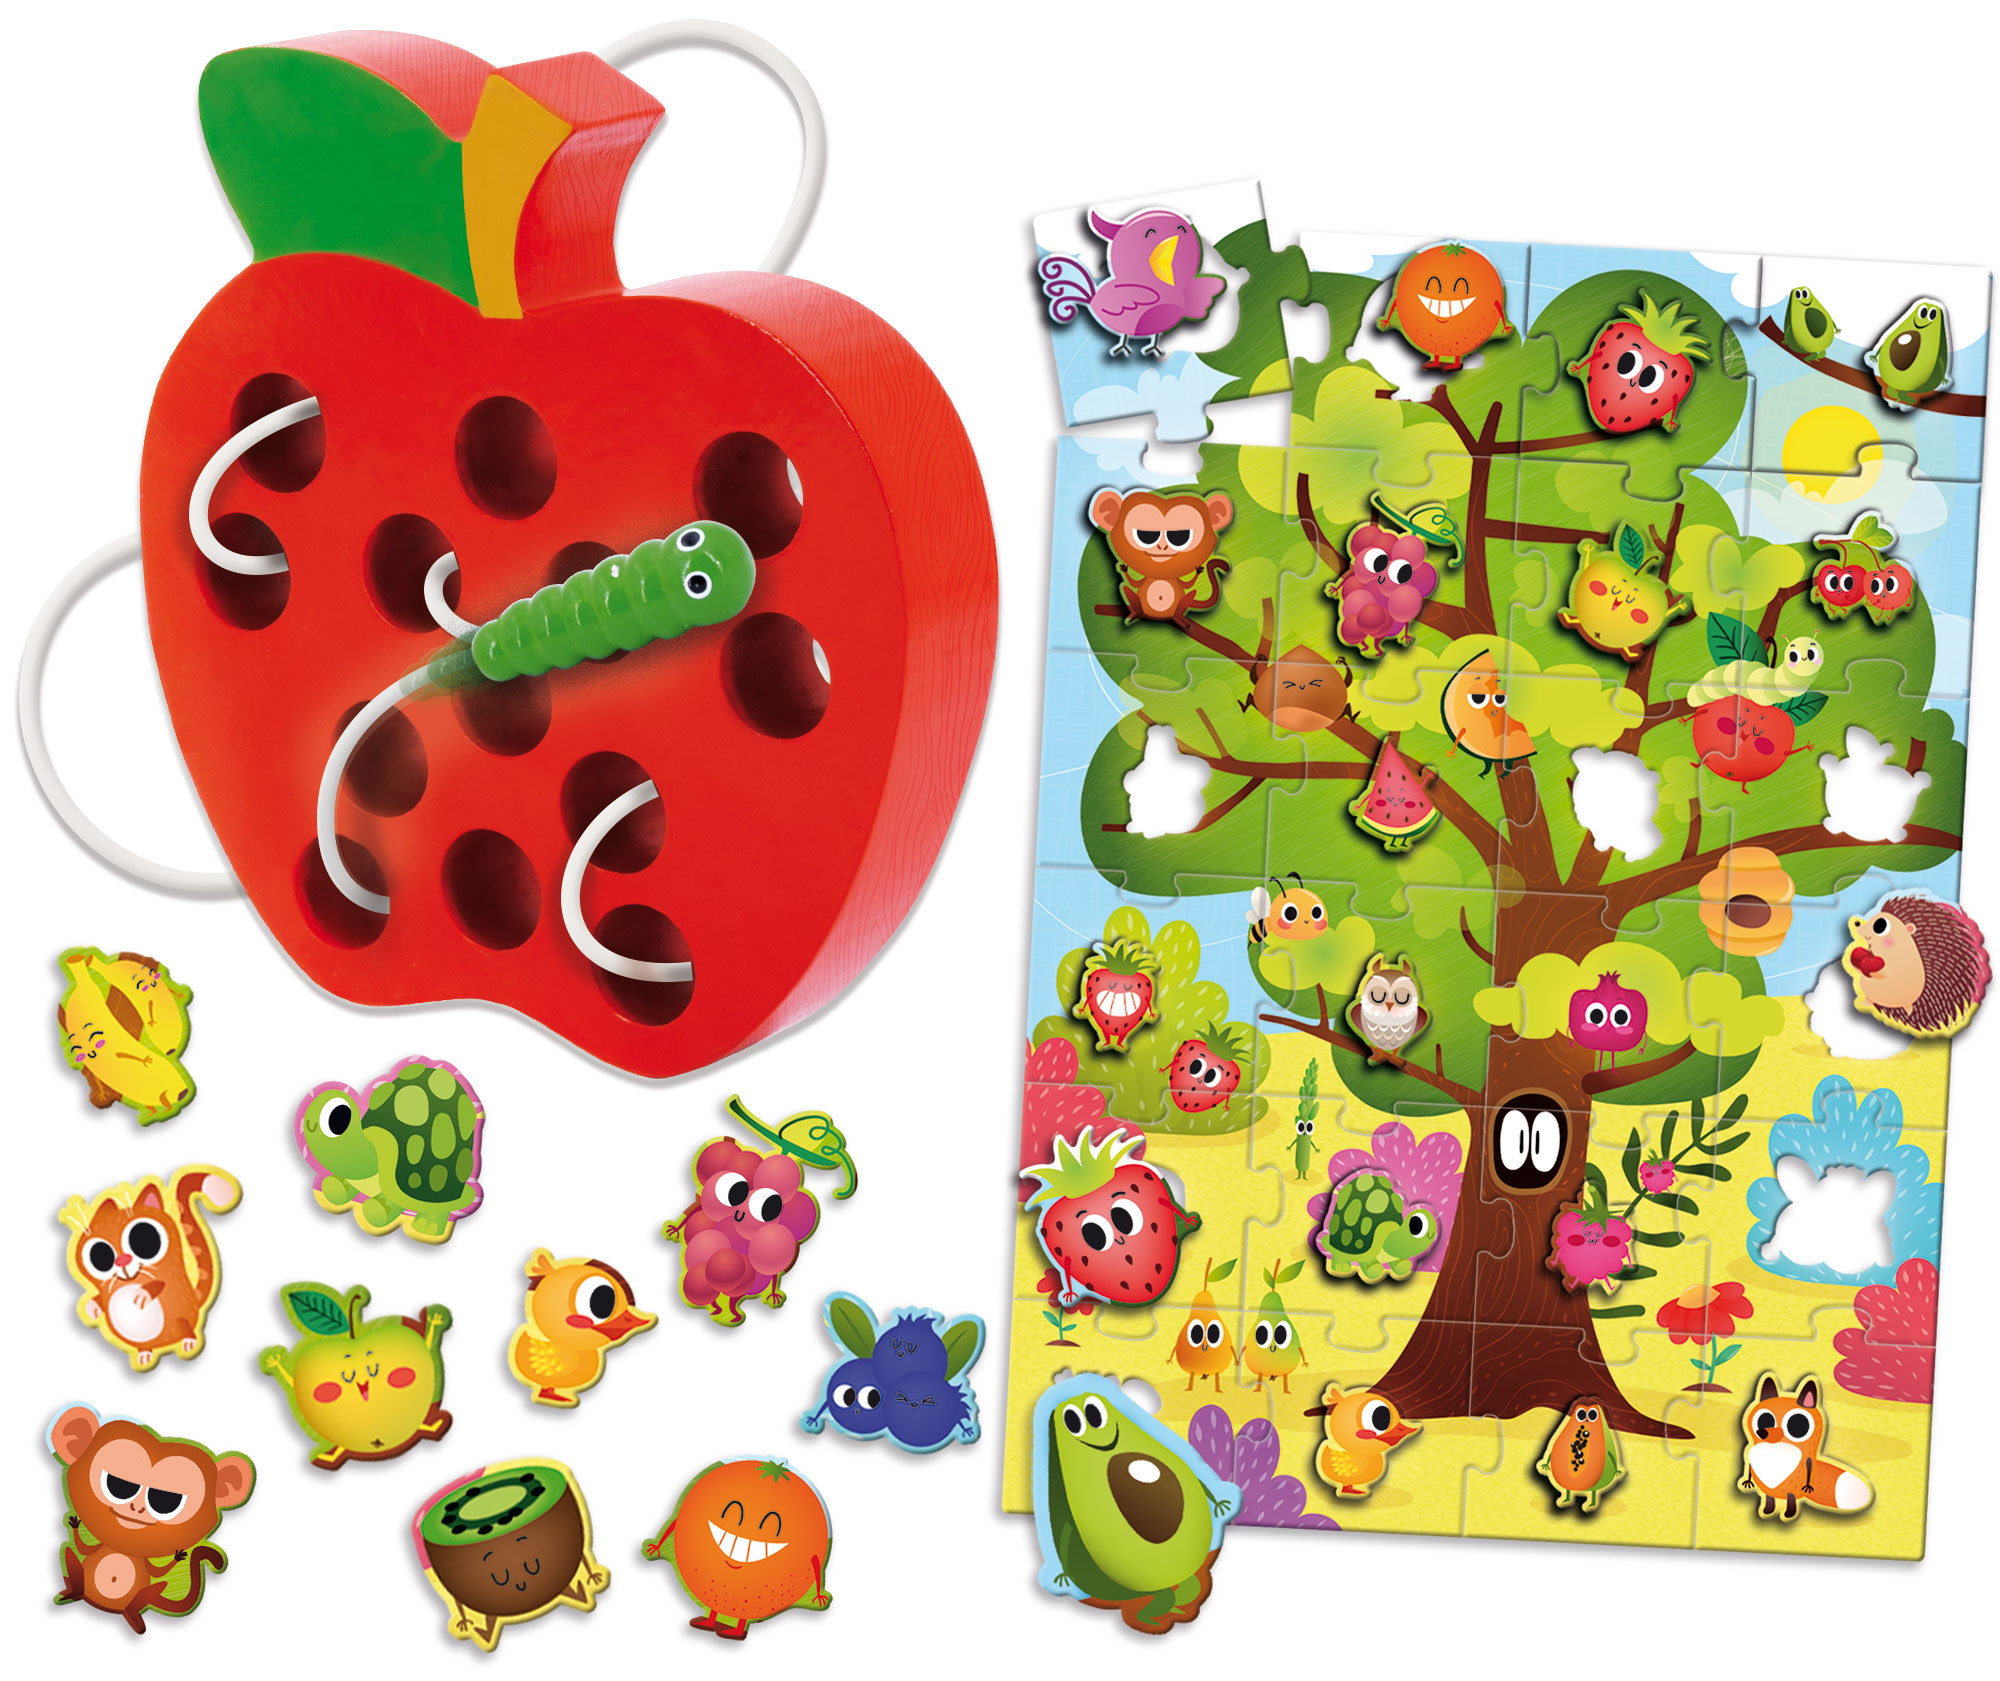 Lernspiele, & Schnurspiel mit CO von Montessori Puzzle, mehrfarbig Baby Lisciani LERNEN Wurm